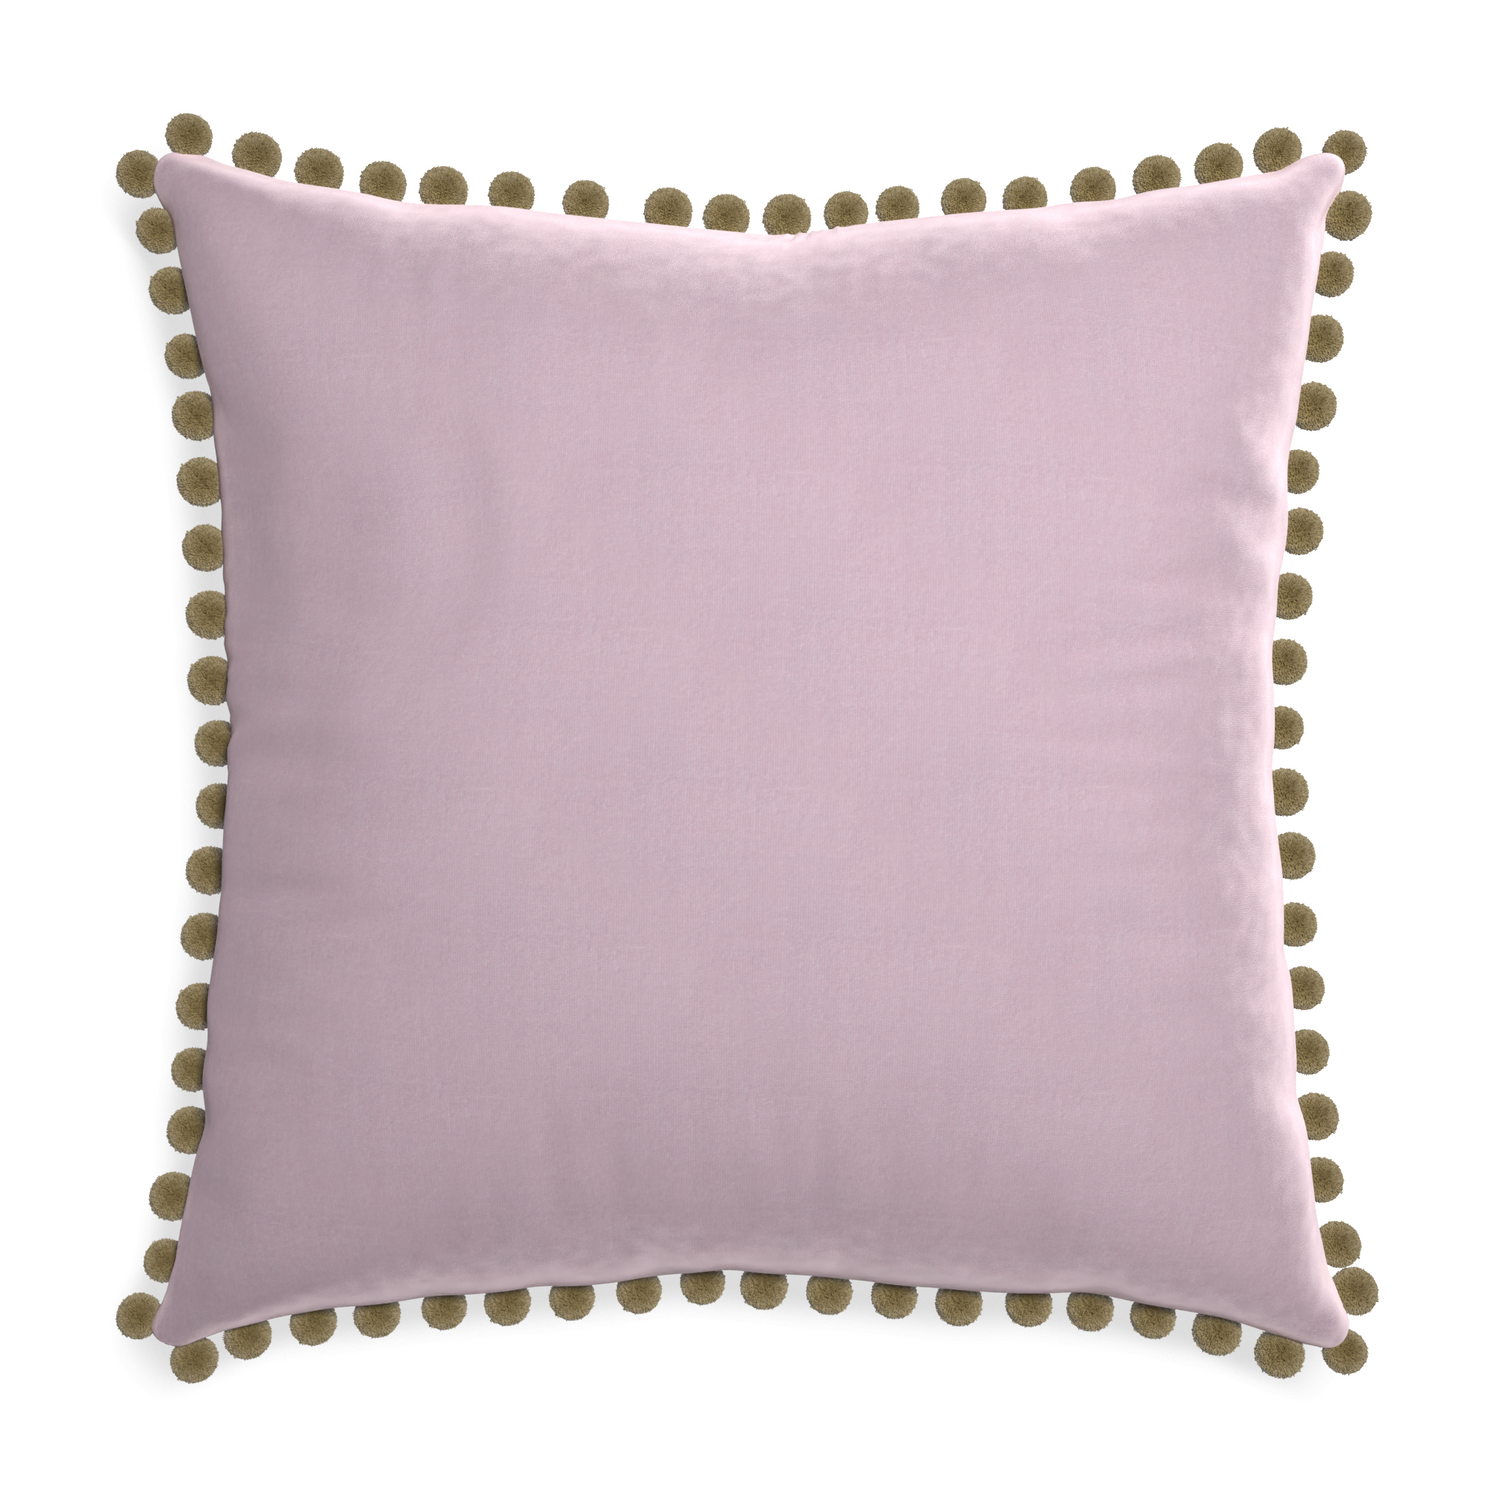 Euro-sham lilac velvet custom pillow with olive pom pom on white background